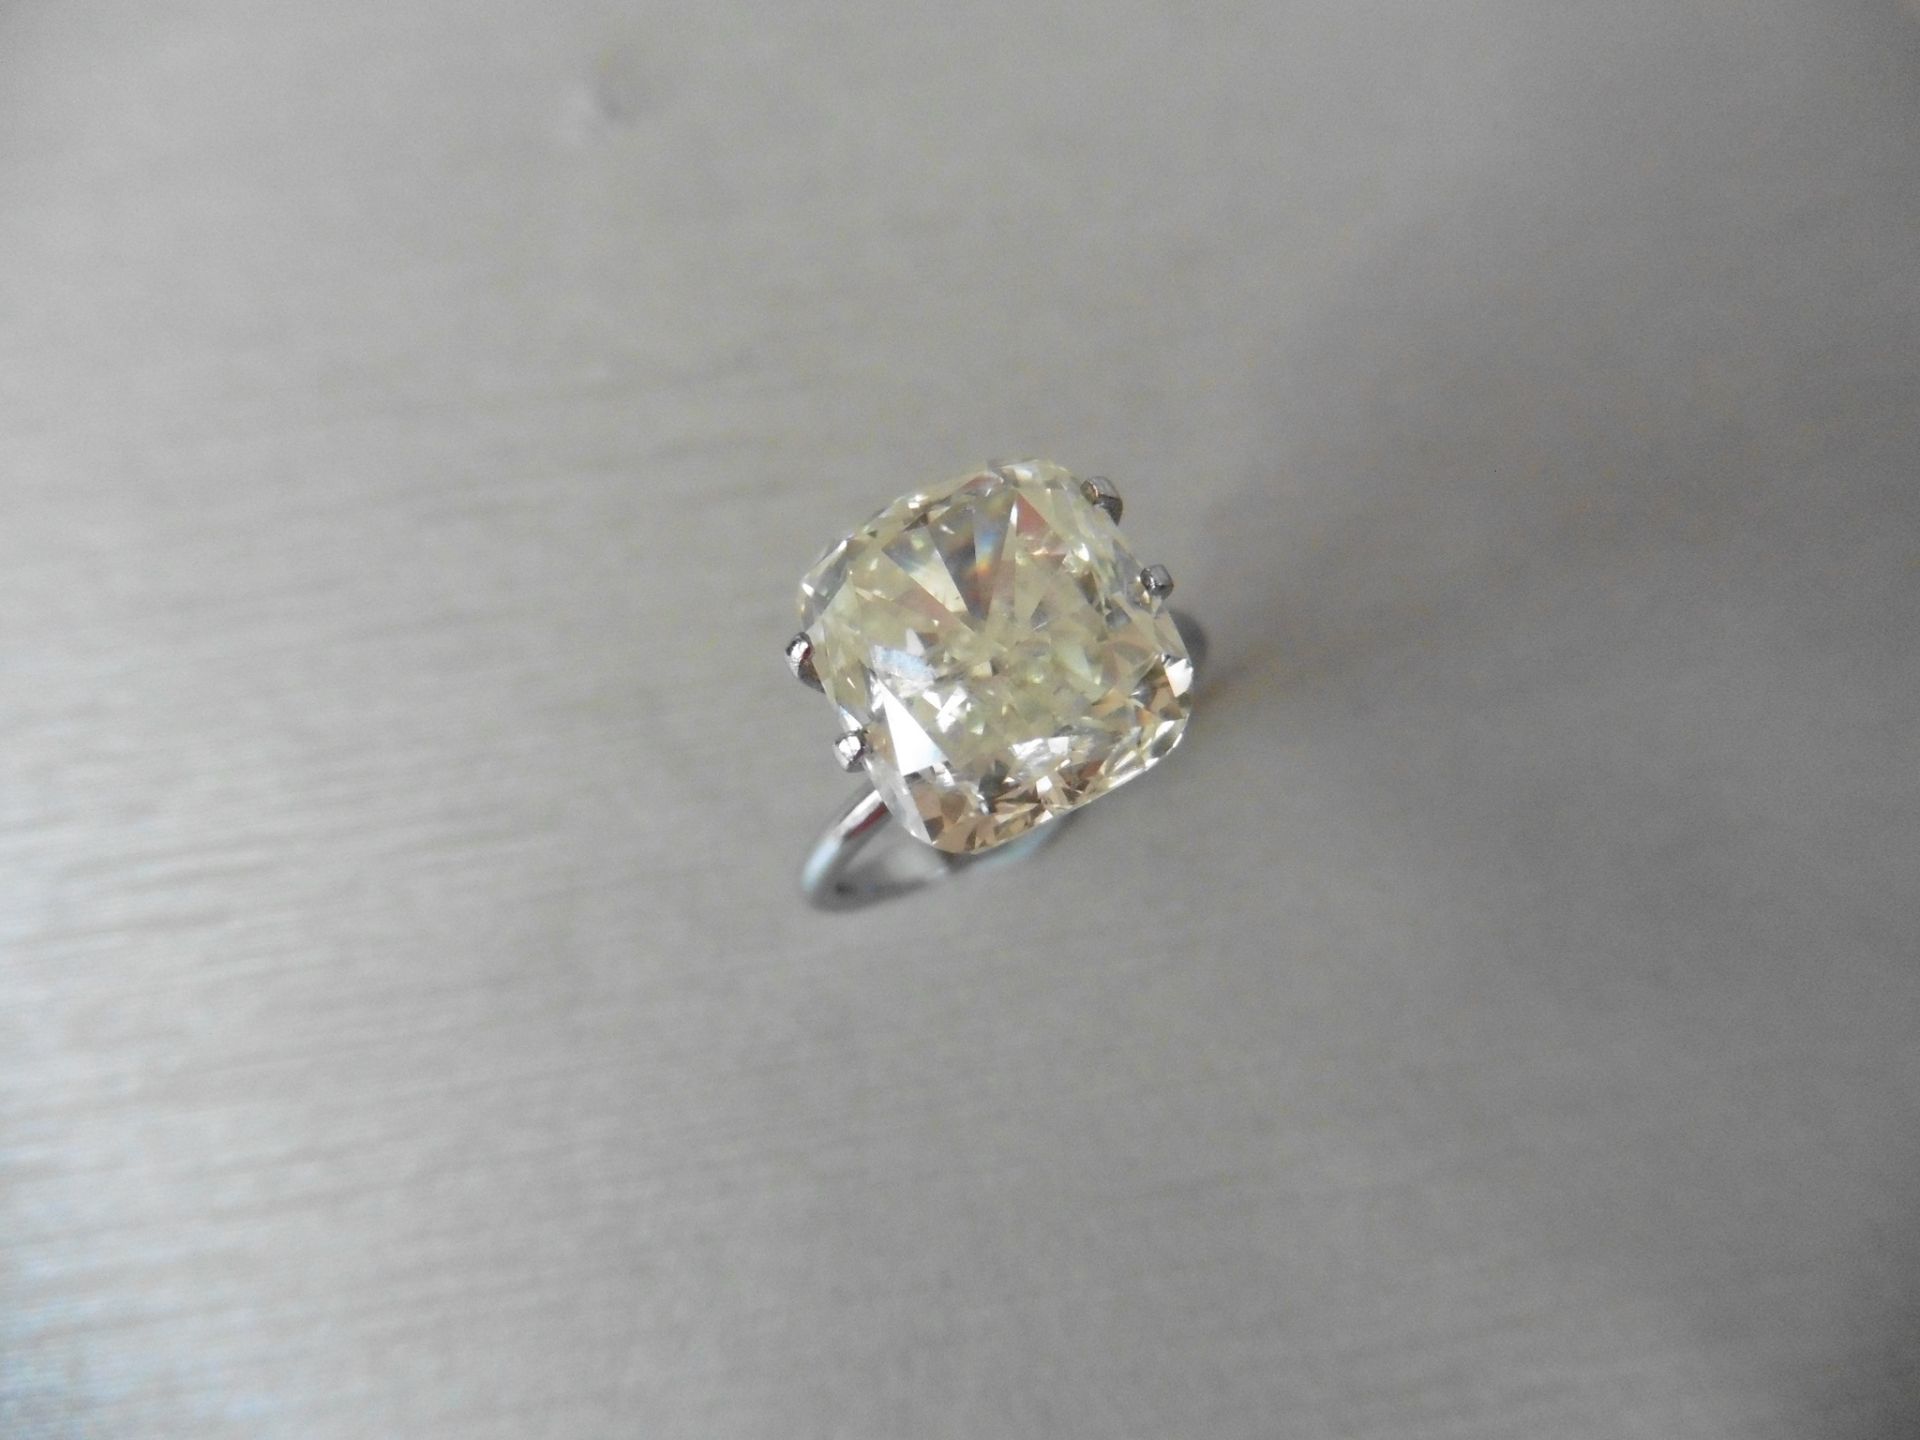 7.55ct loose cushion cut diamond. I colour, si2 clarity ( enhanced ). 11.03 x 10.15 x 7.43mm. No